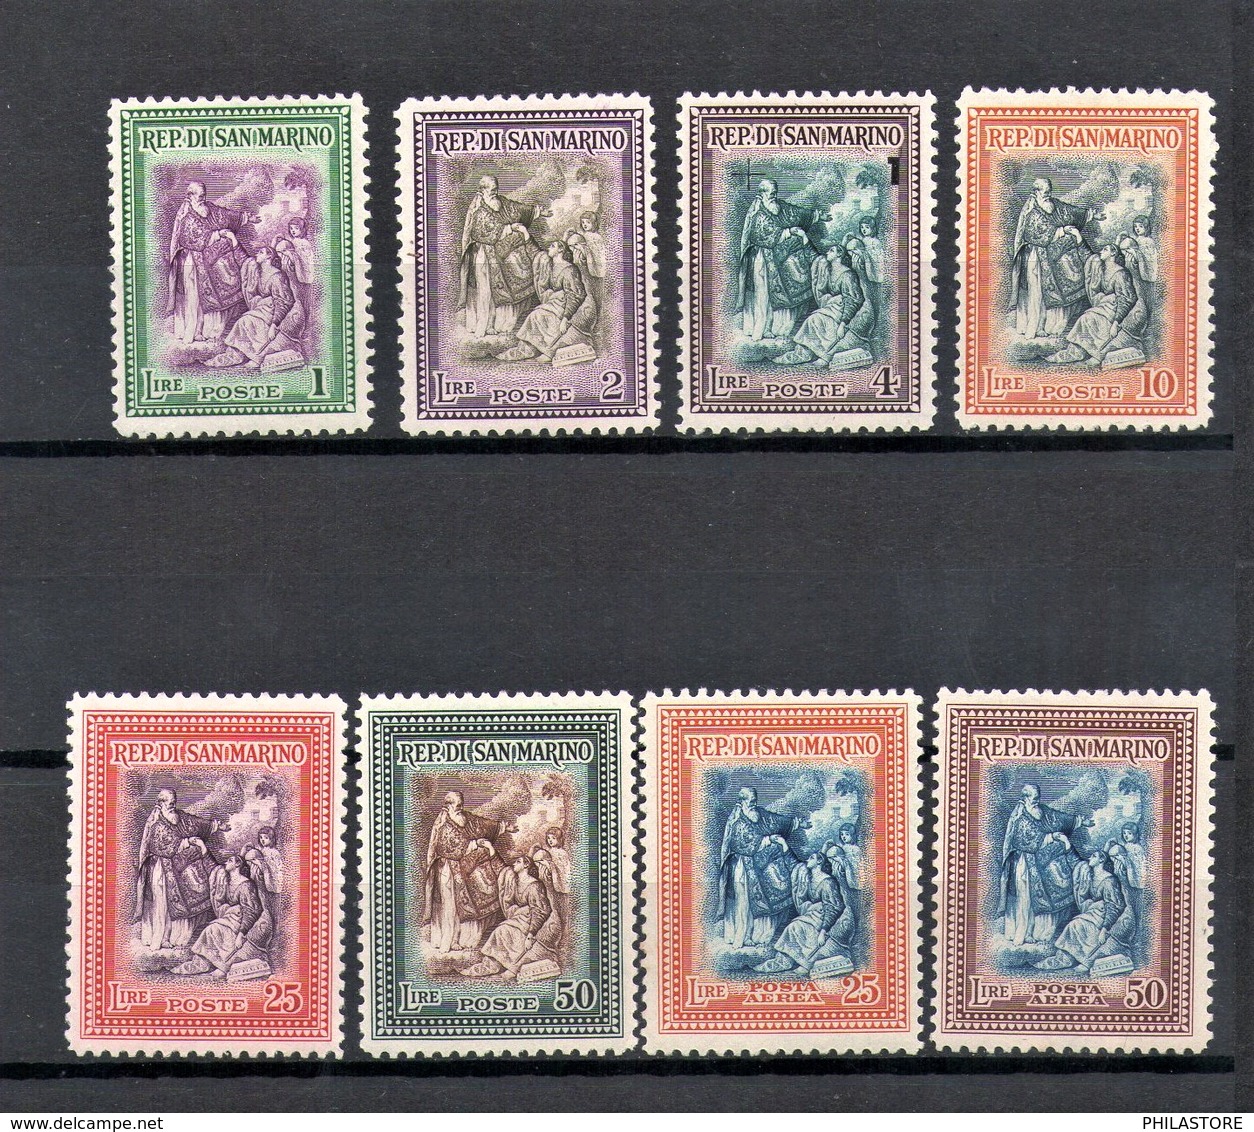 SAN MARINO 1947 Sc 260-265, C52-C53 SAn Marino Raising The Republic MH - Unused Stamps